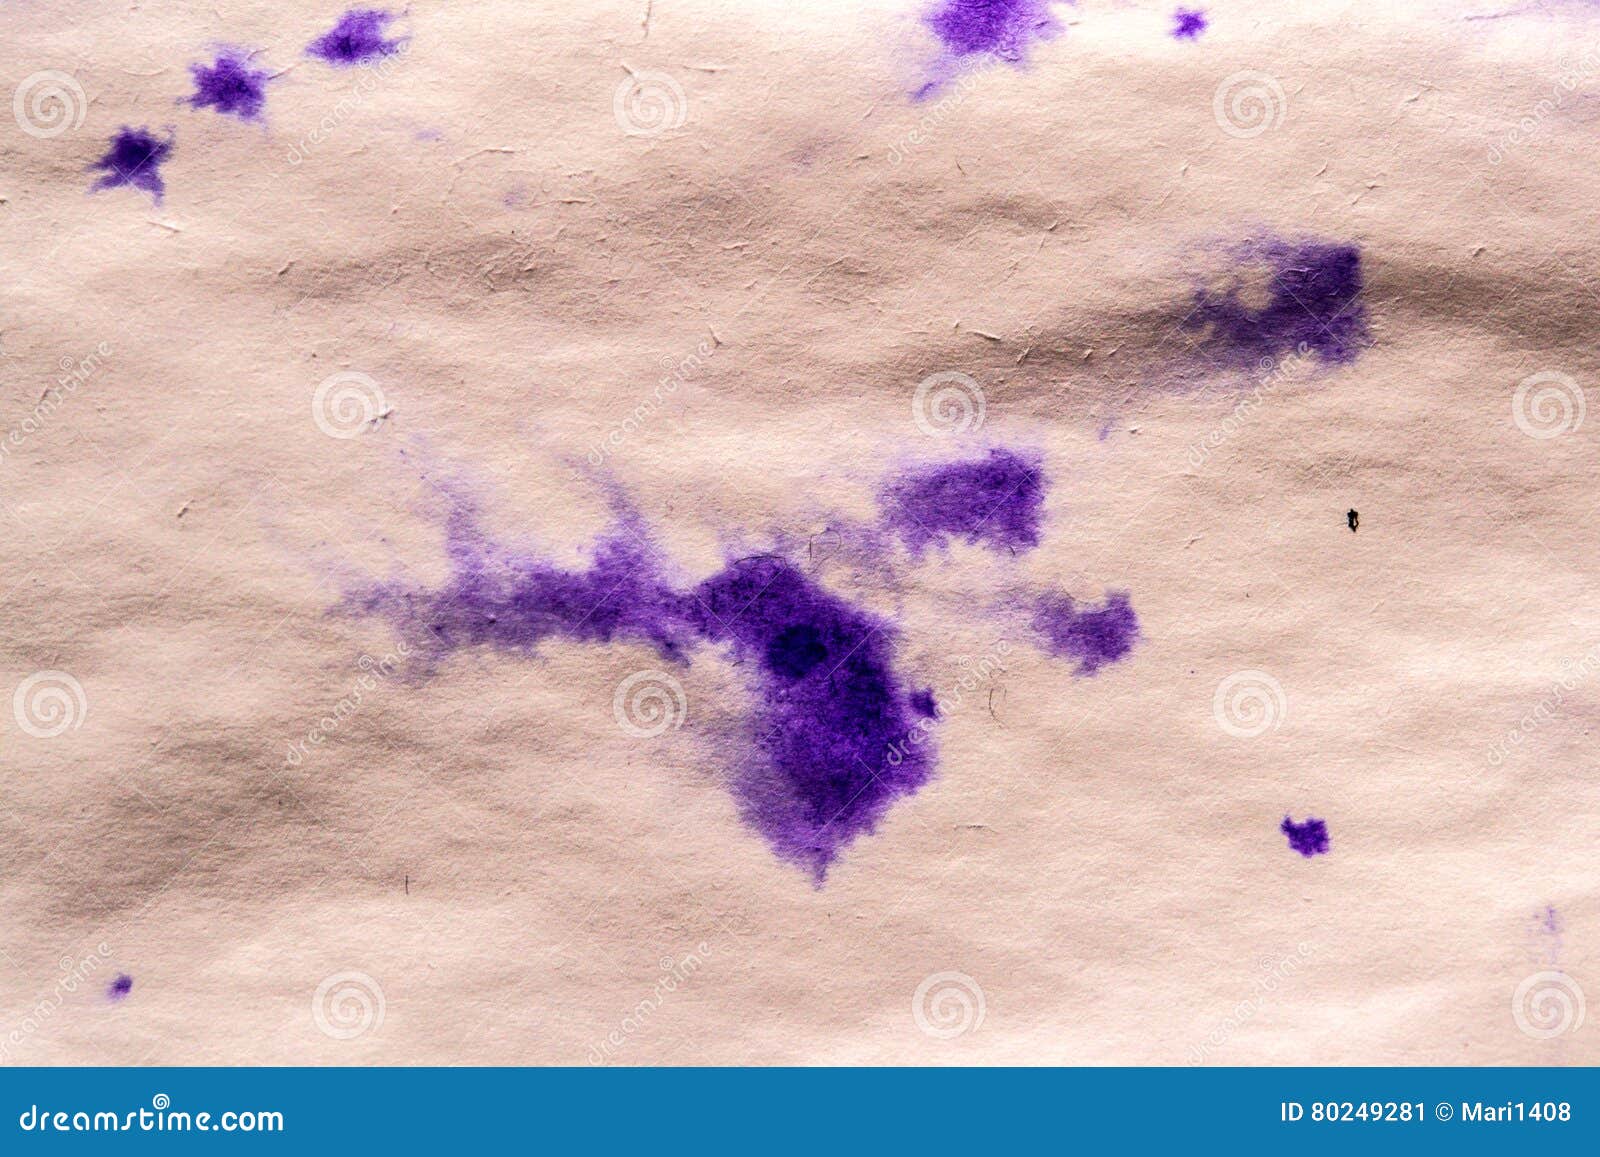 Почему на теле остаются следы. Фиолетовые чернила на бумаге. Фиолетовые мелкие пятна. Фиолетовая краска на бумаге. Фиолетовые пятнышки на теле.